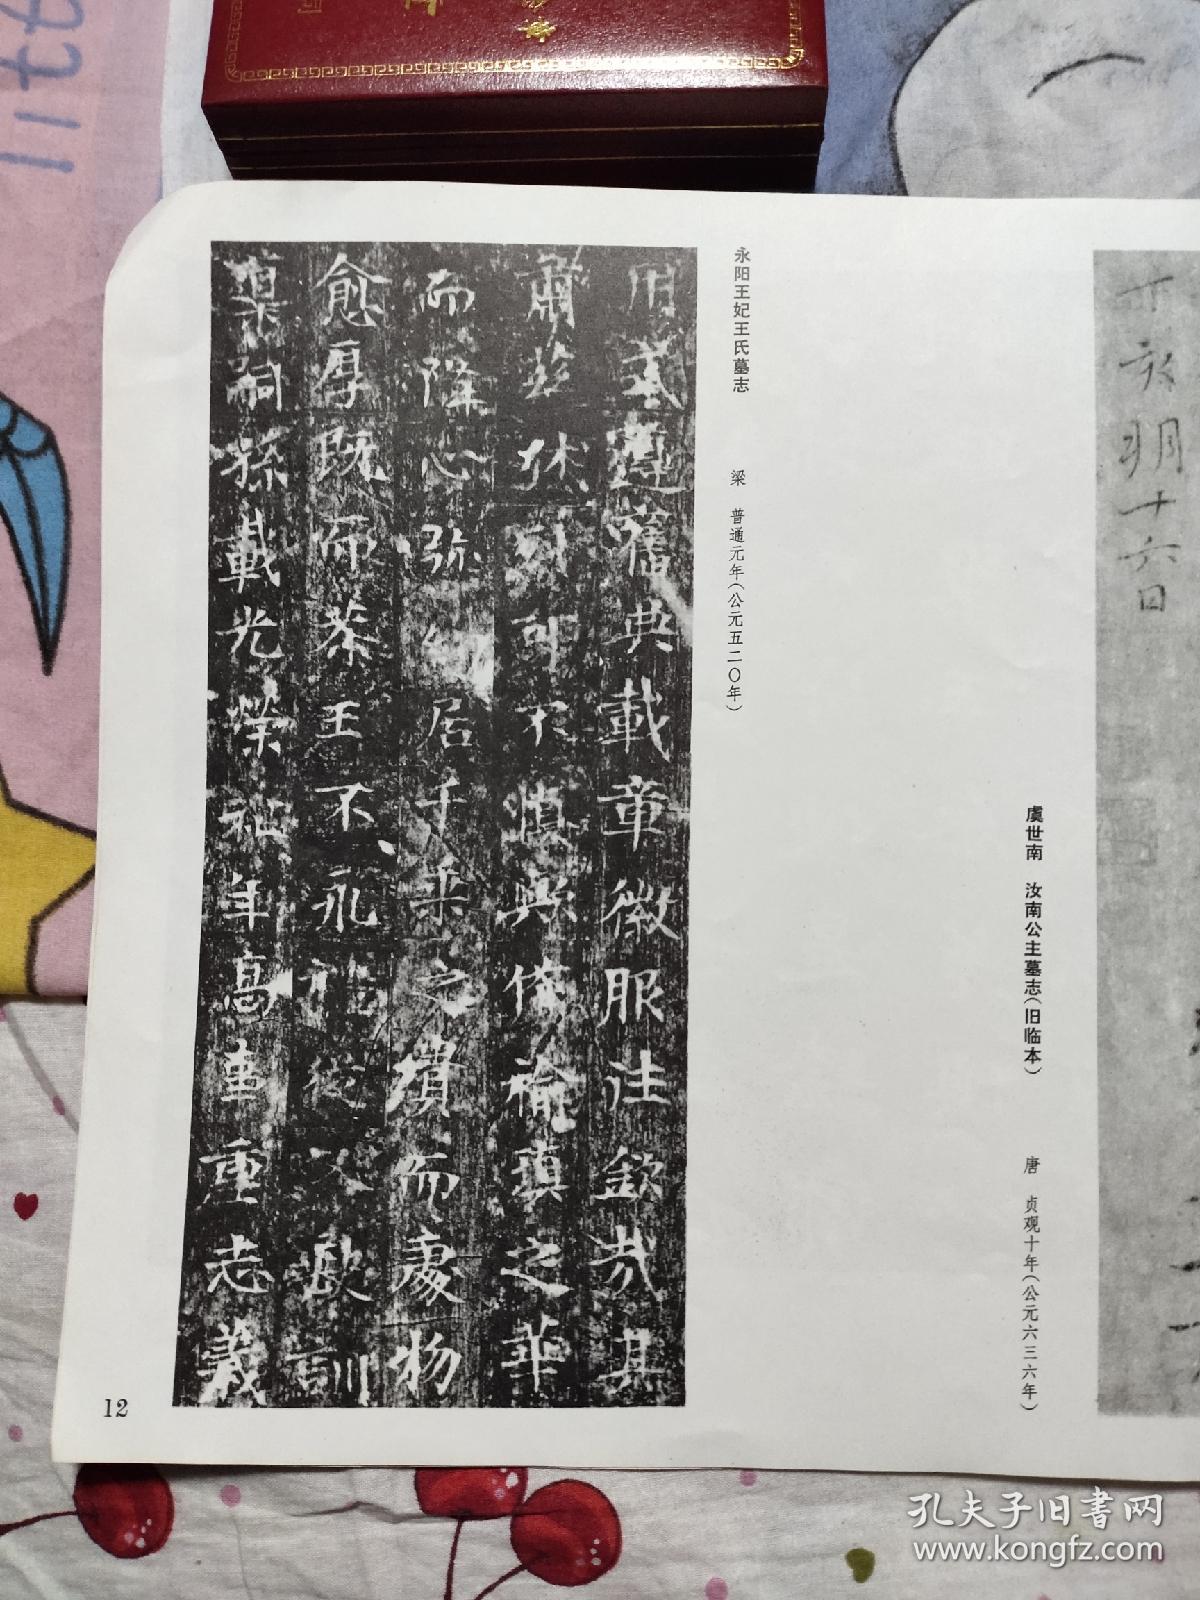 中国古代书法展览展品选集，12元包邮，